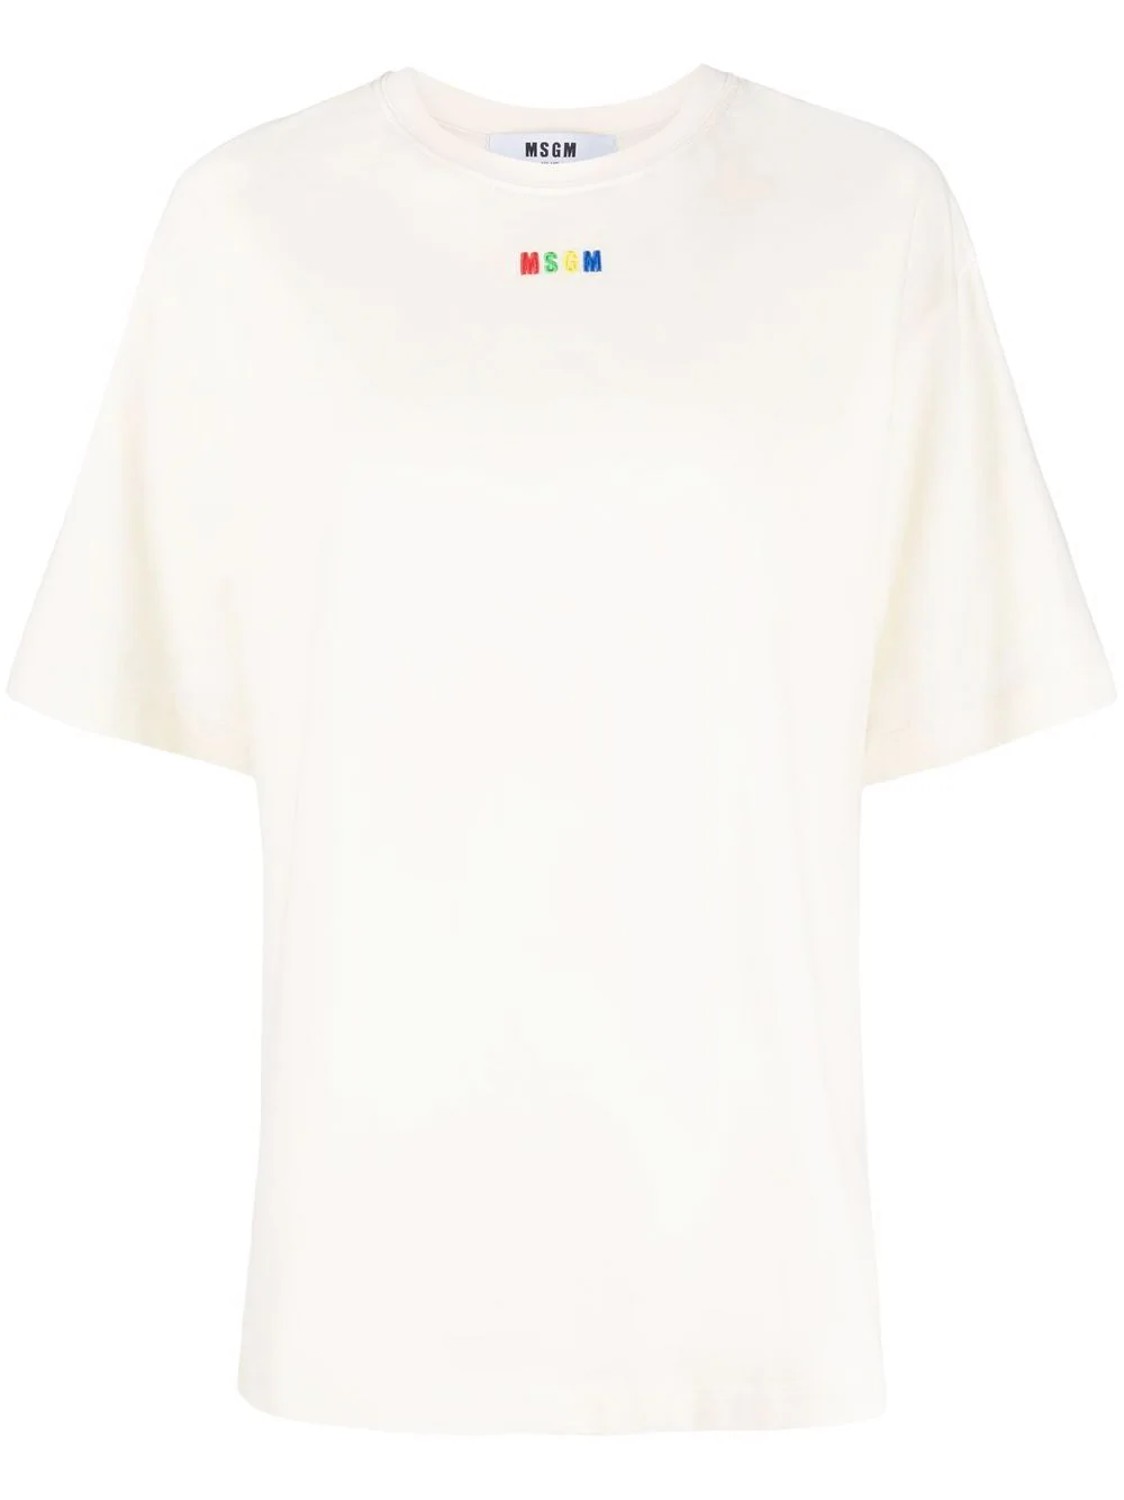 shop MSGM Saldi T-shirts: T-shirts MSGM, fit regolare, manica corta, girocollo, color panna, mini logo davanti.

Composizione: 100% cotone. number 2310